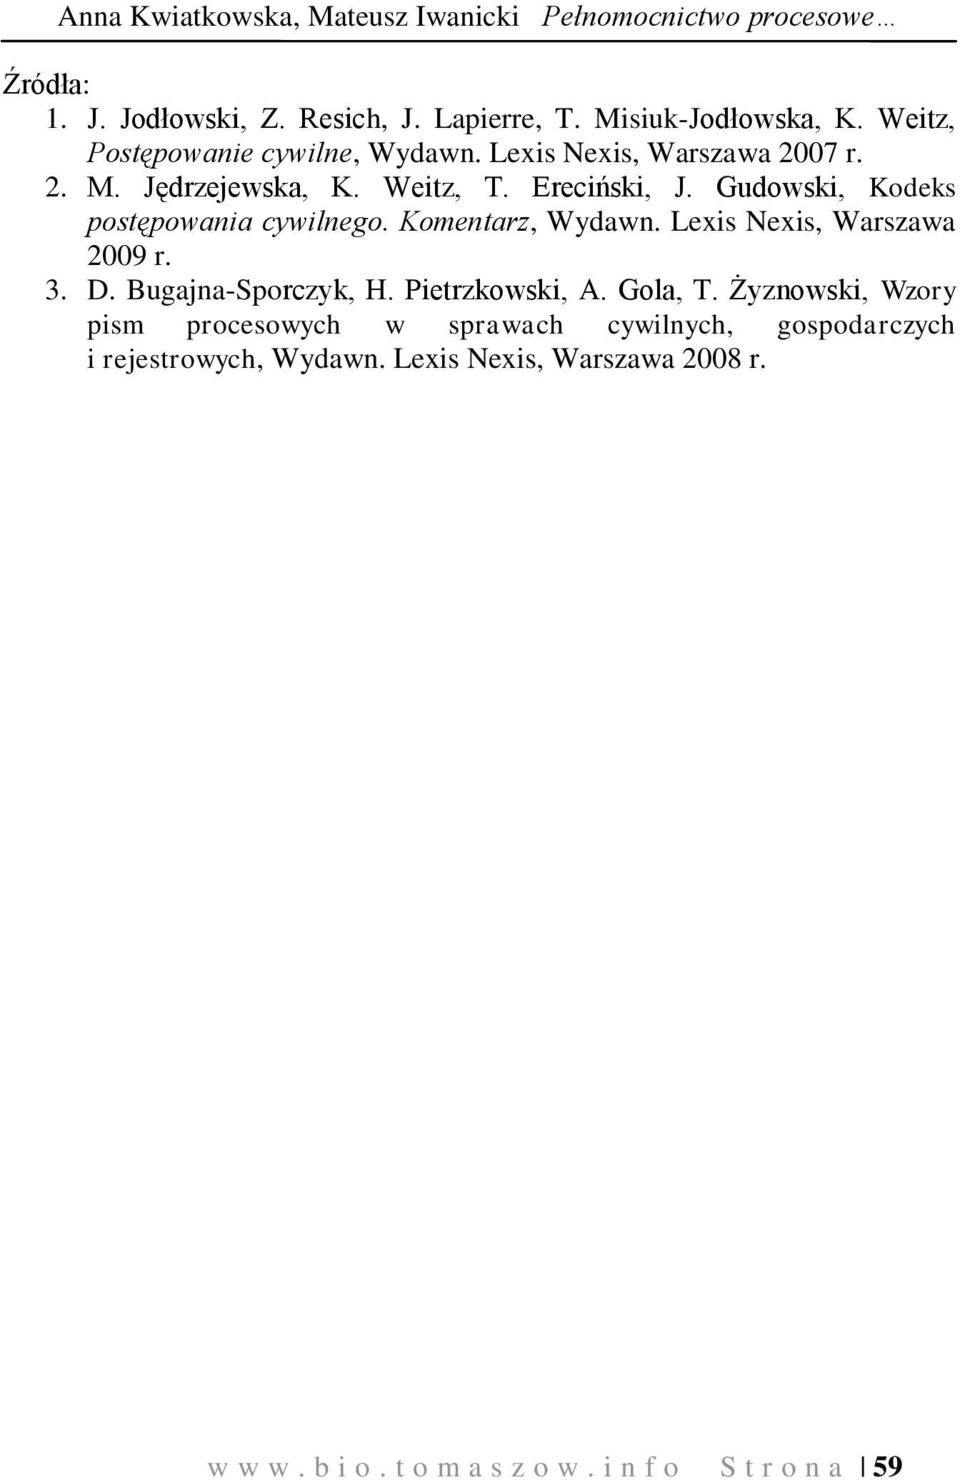 Gudowski, Kodeks postępowania cywilnego. Komentarz, Wydawn. Lexis Nexis, Warszawa 2009 r. 3. D. Bugajna-Sporczyk, H. Pietrzkowski, A. Gola, T.